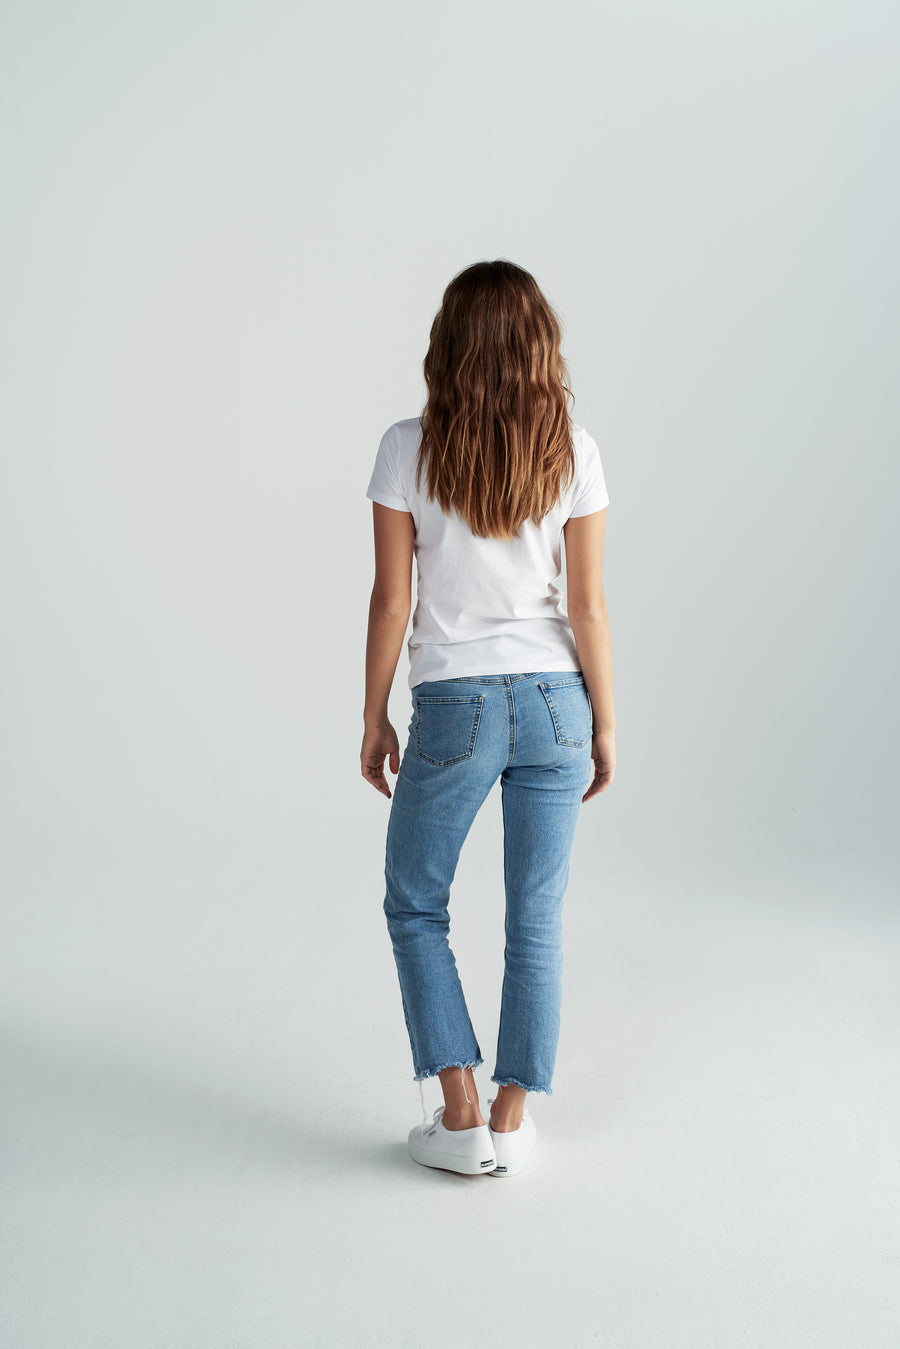 Nachhaltiges Damen-T-Shirt "Waltraud" in Weiß